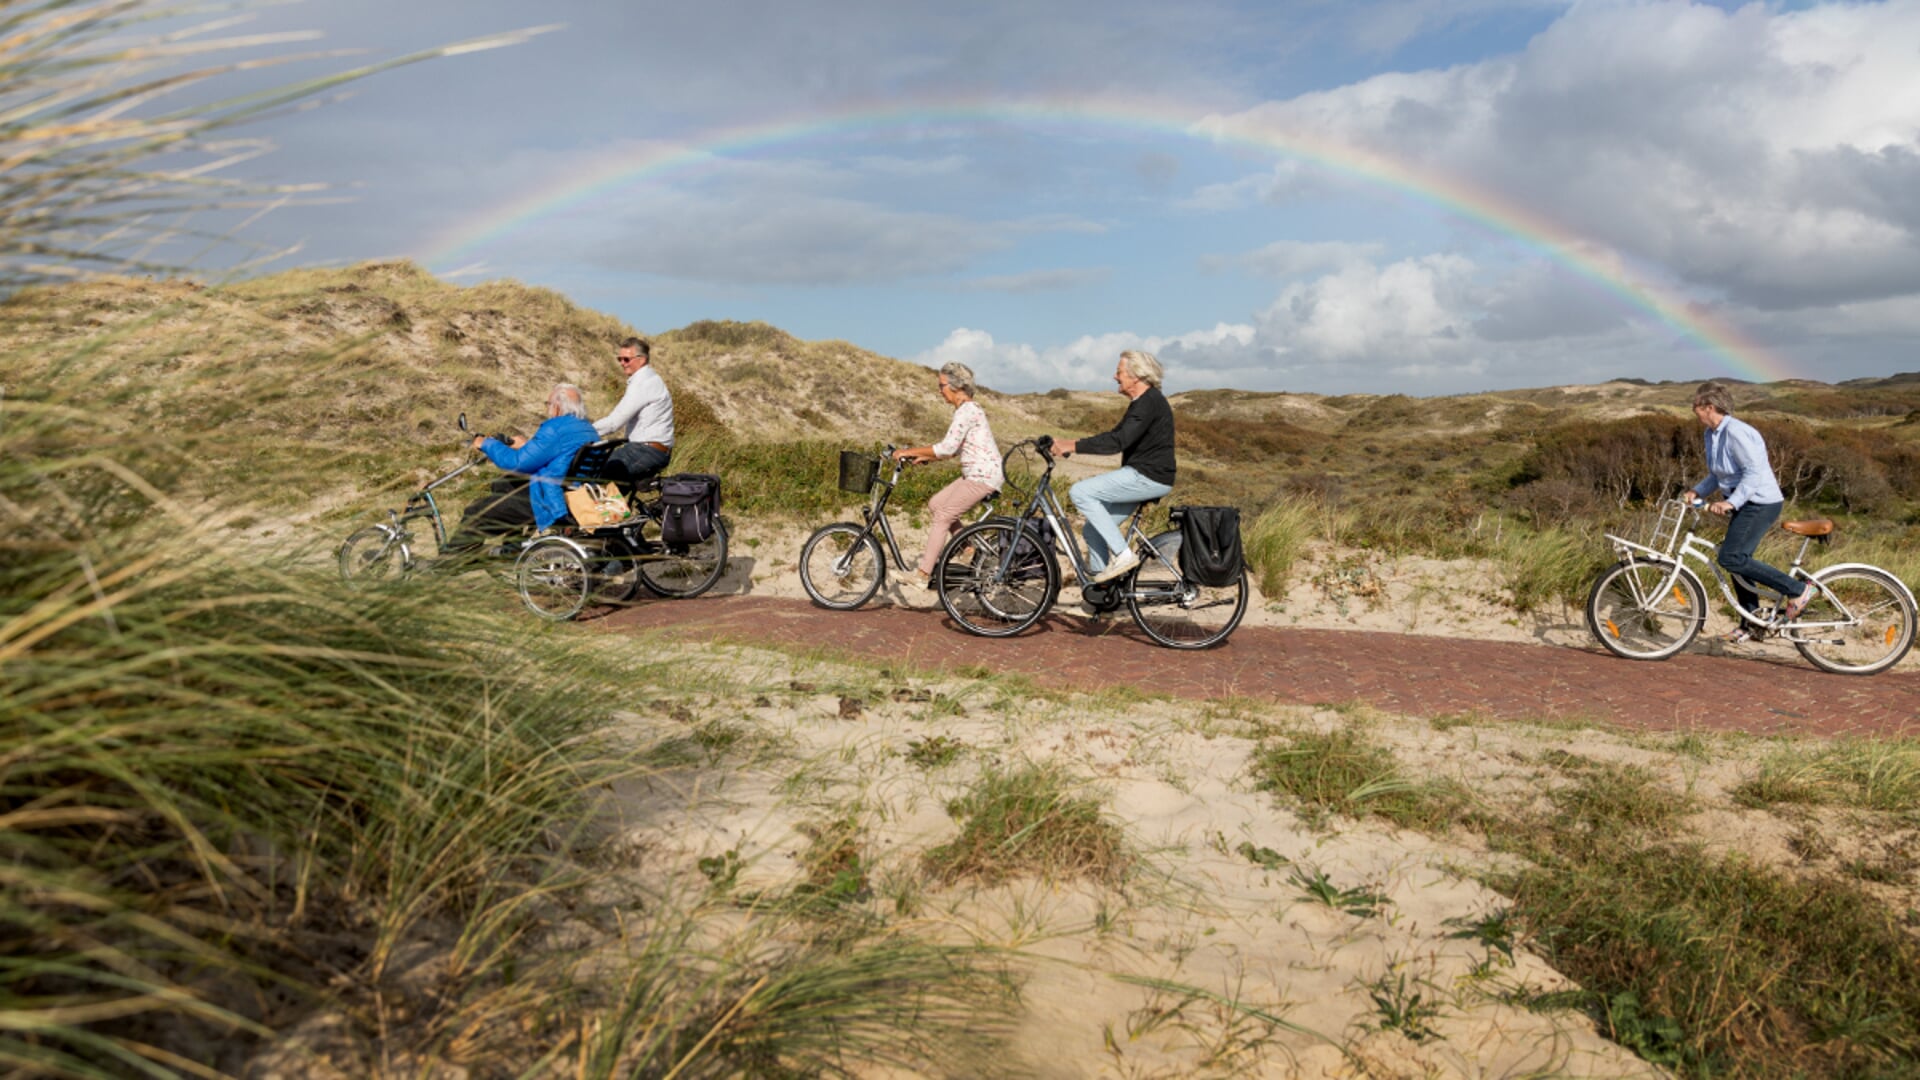 Bergen, 5 september 2019
Programma Doortrappen is er om ouderen zo lang mogelijk veilig op de fiets te houden.